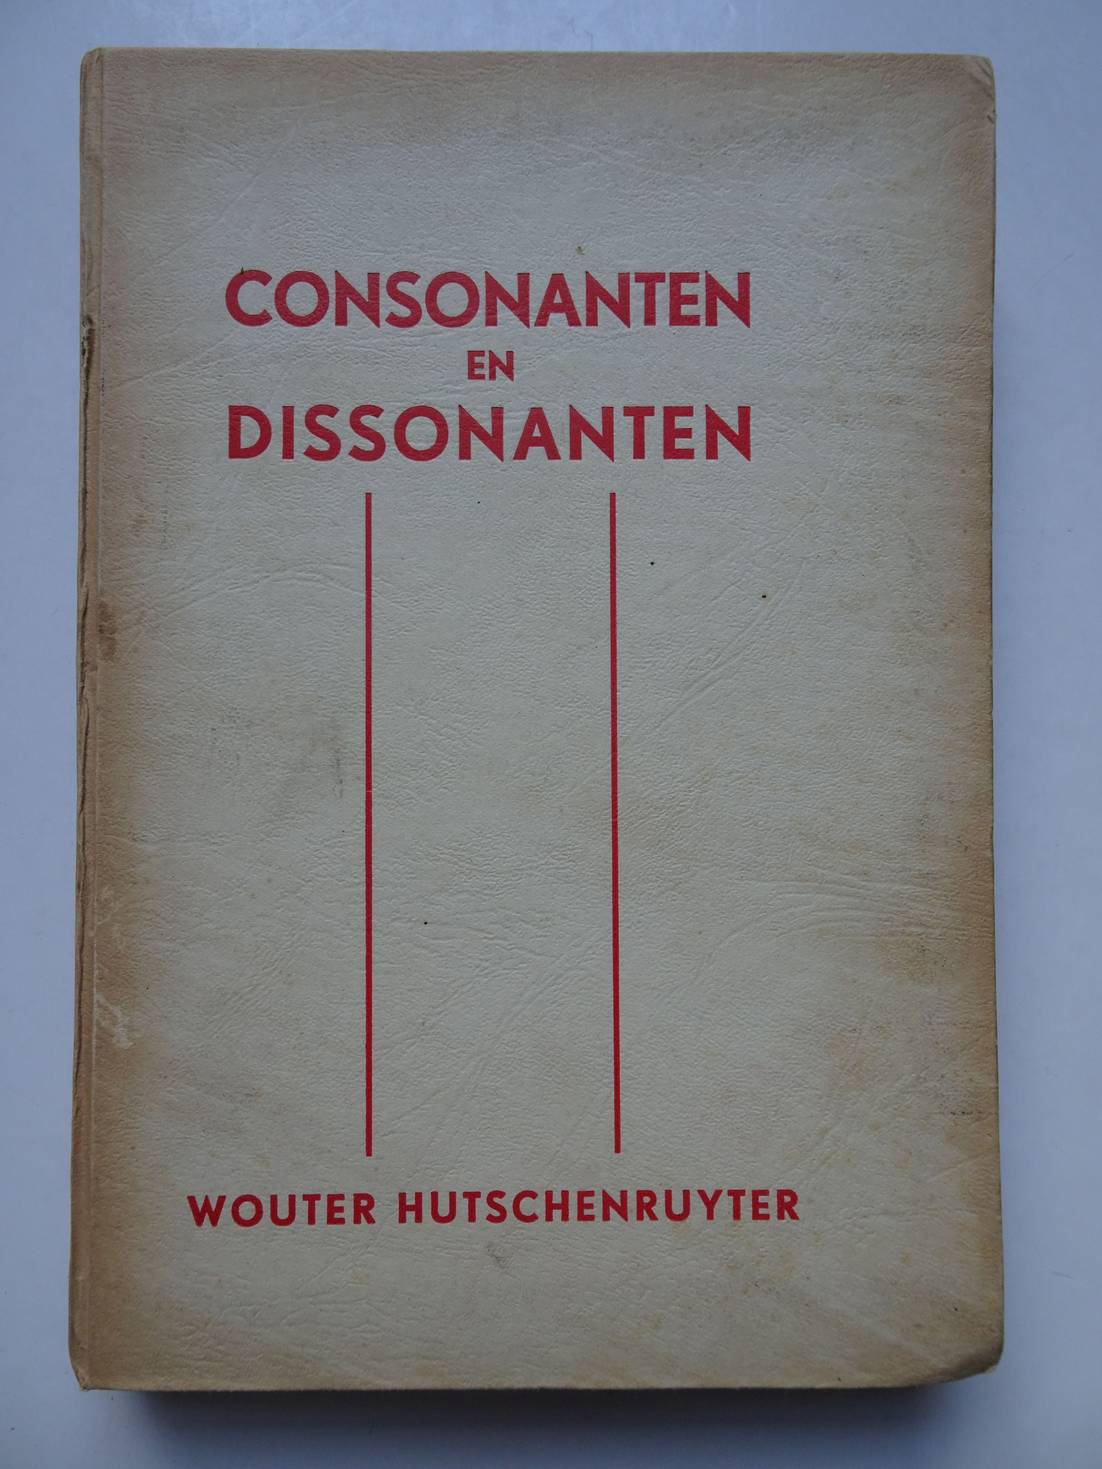 Hutschenruyter, Wouter. - Consonanten en dissonanten. Mijn herinneringen.